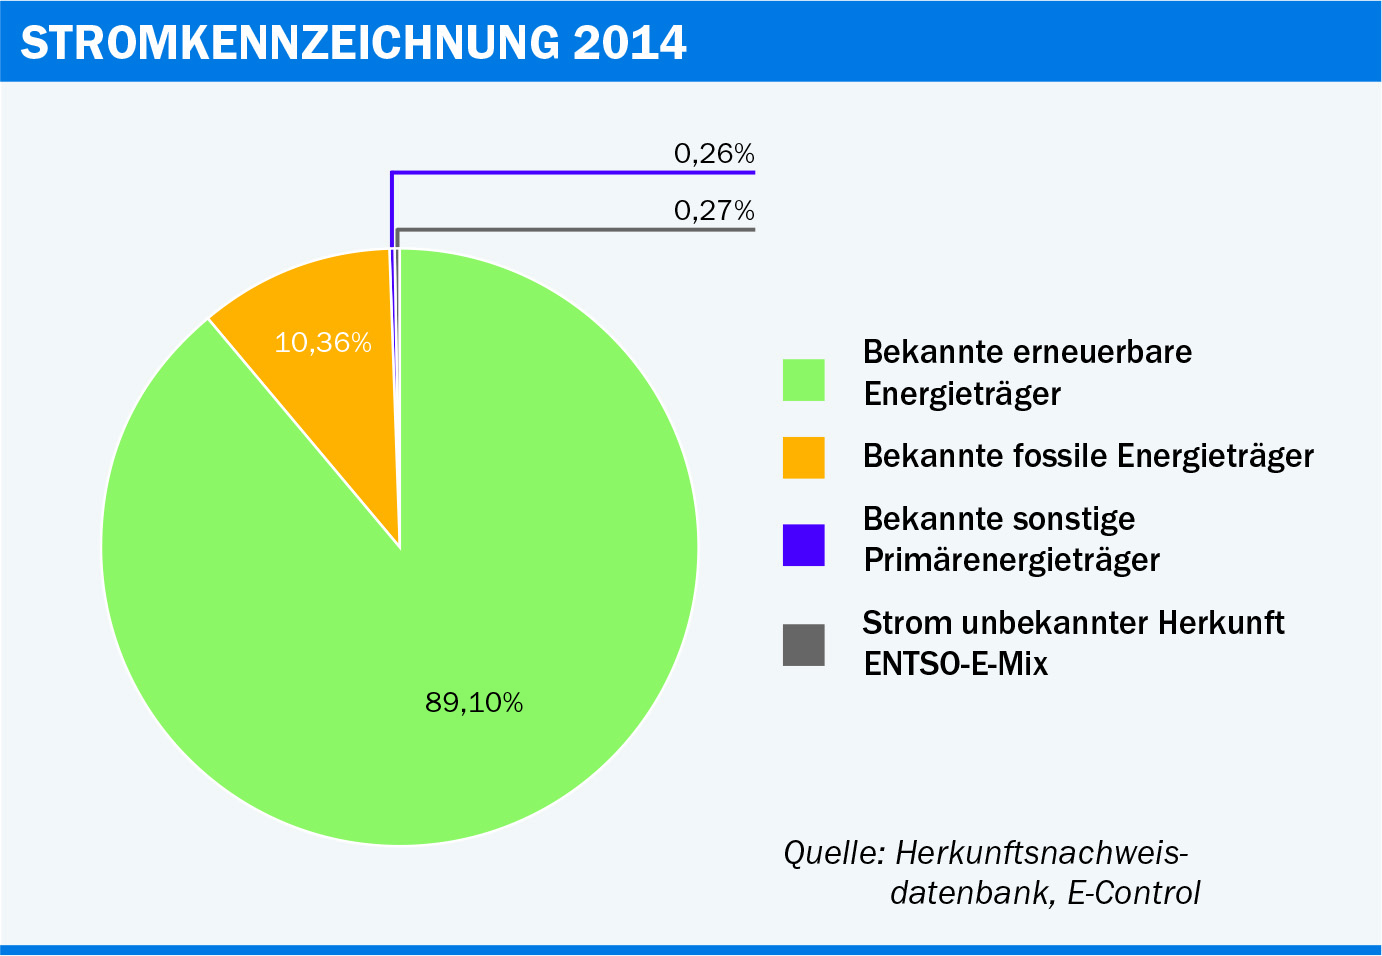 Abbildung 1: Näherungswert für die österreichische Stromkennzeichnung 2014 [2] . Quelle: E-Control.